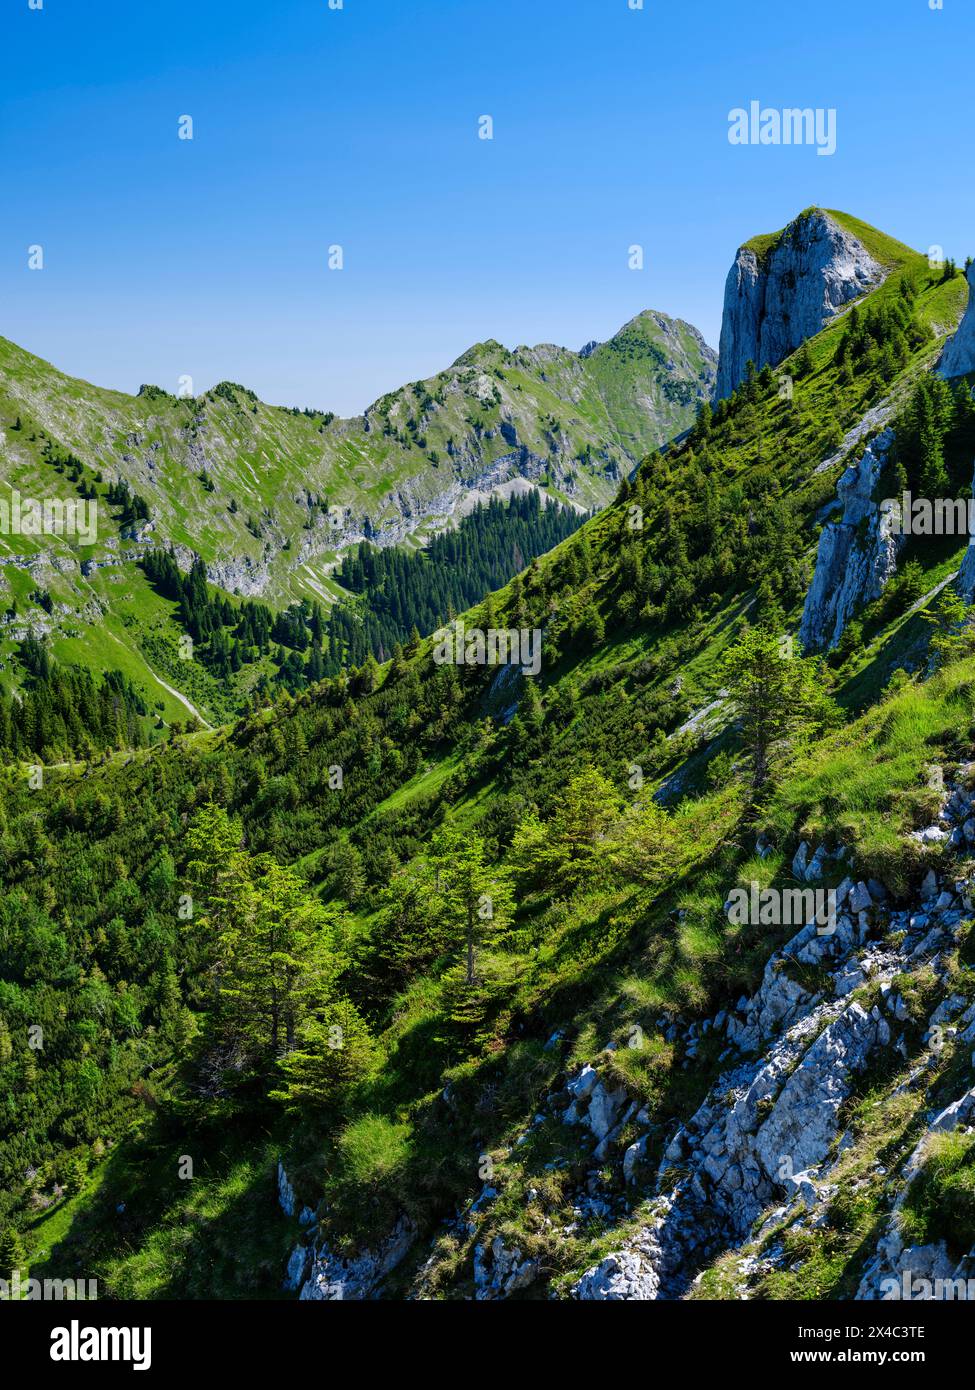 Blick in Richtung große Klammspitze und Mt. Hasentalkopf. Naturpark Ammergauer Alpen in den nördlichen Kalkalpen Oberbayerns. Stockfoto